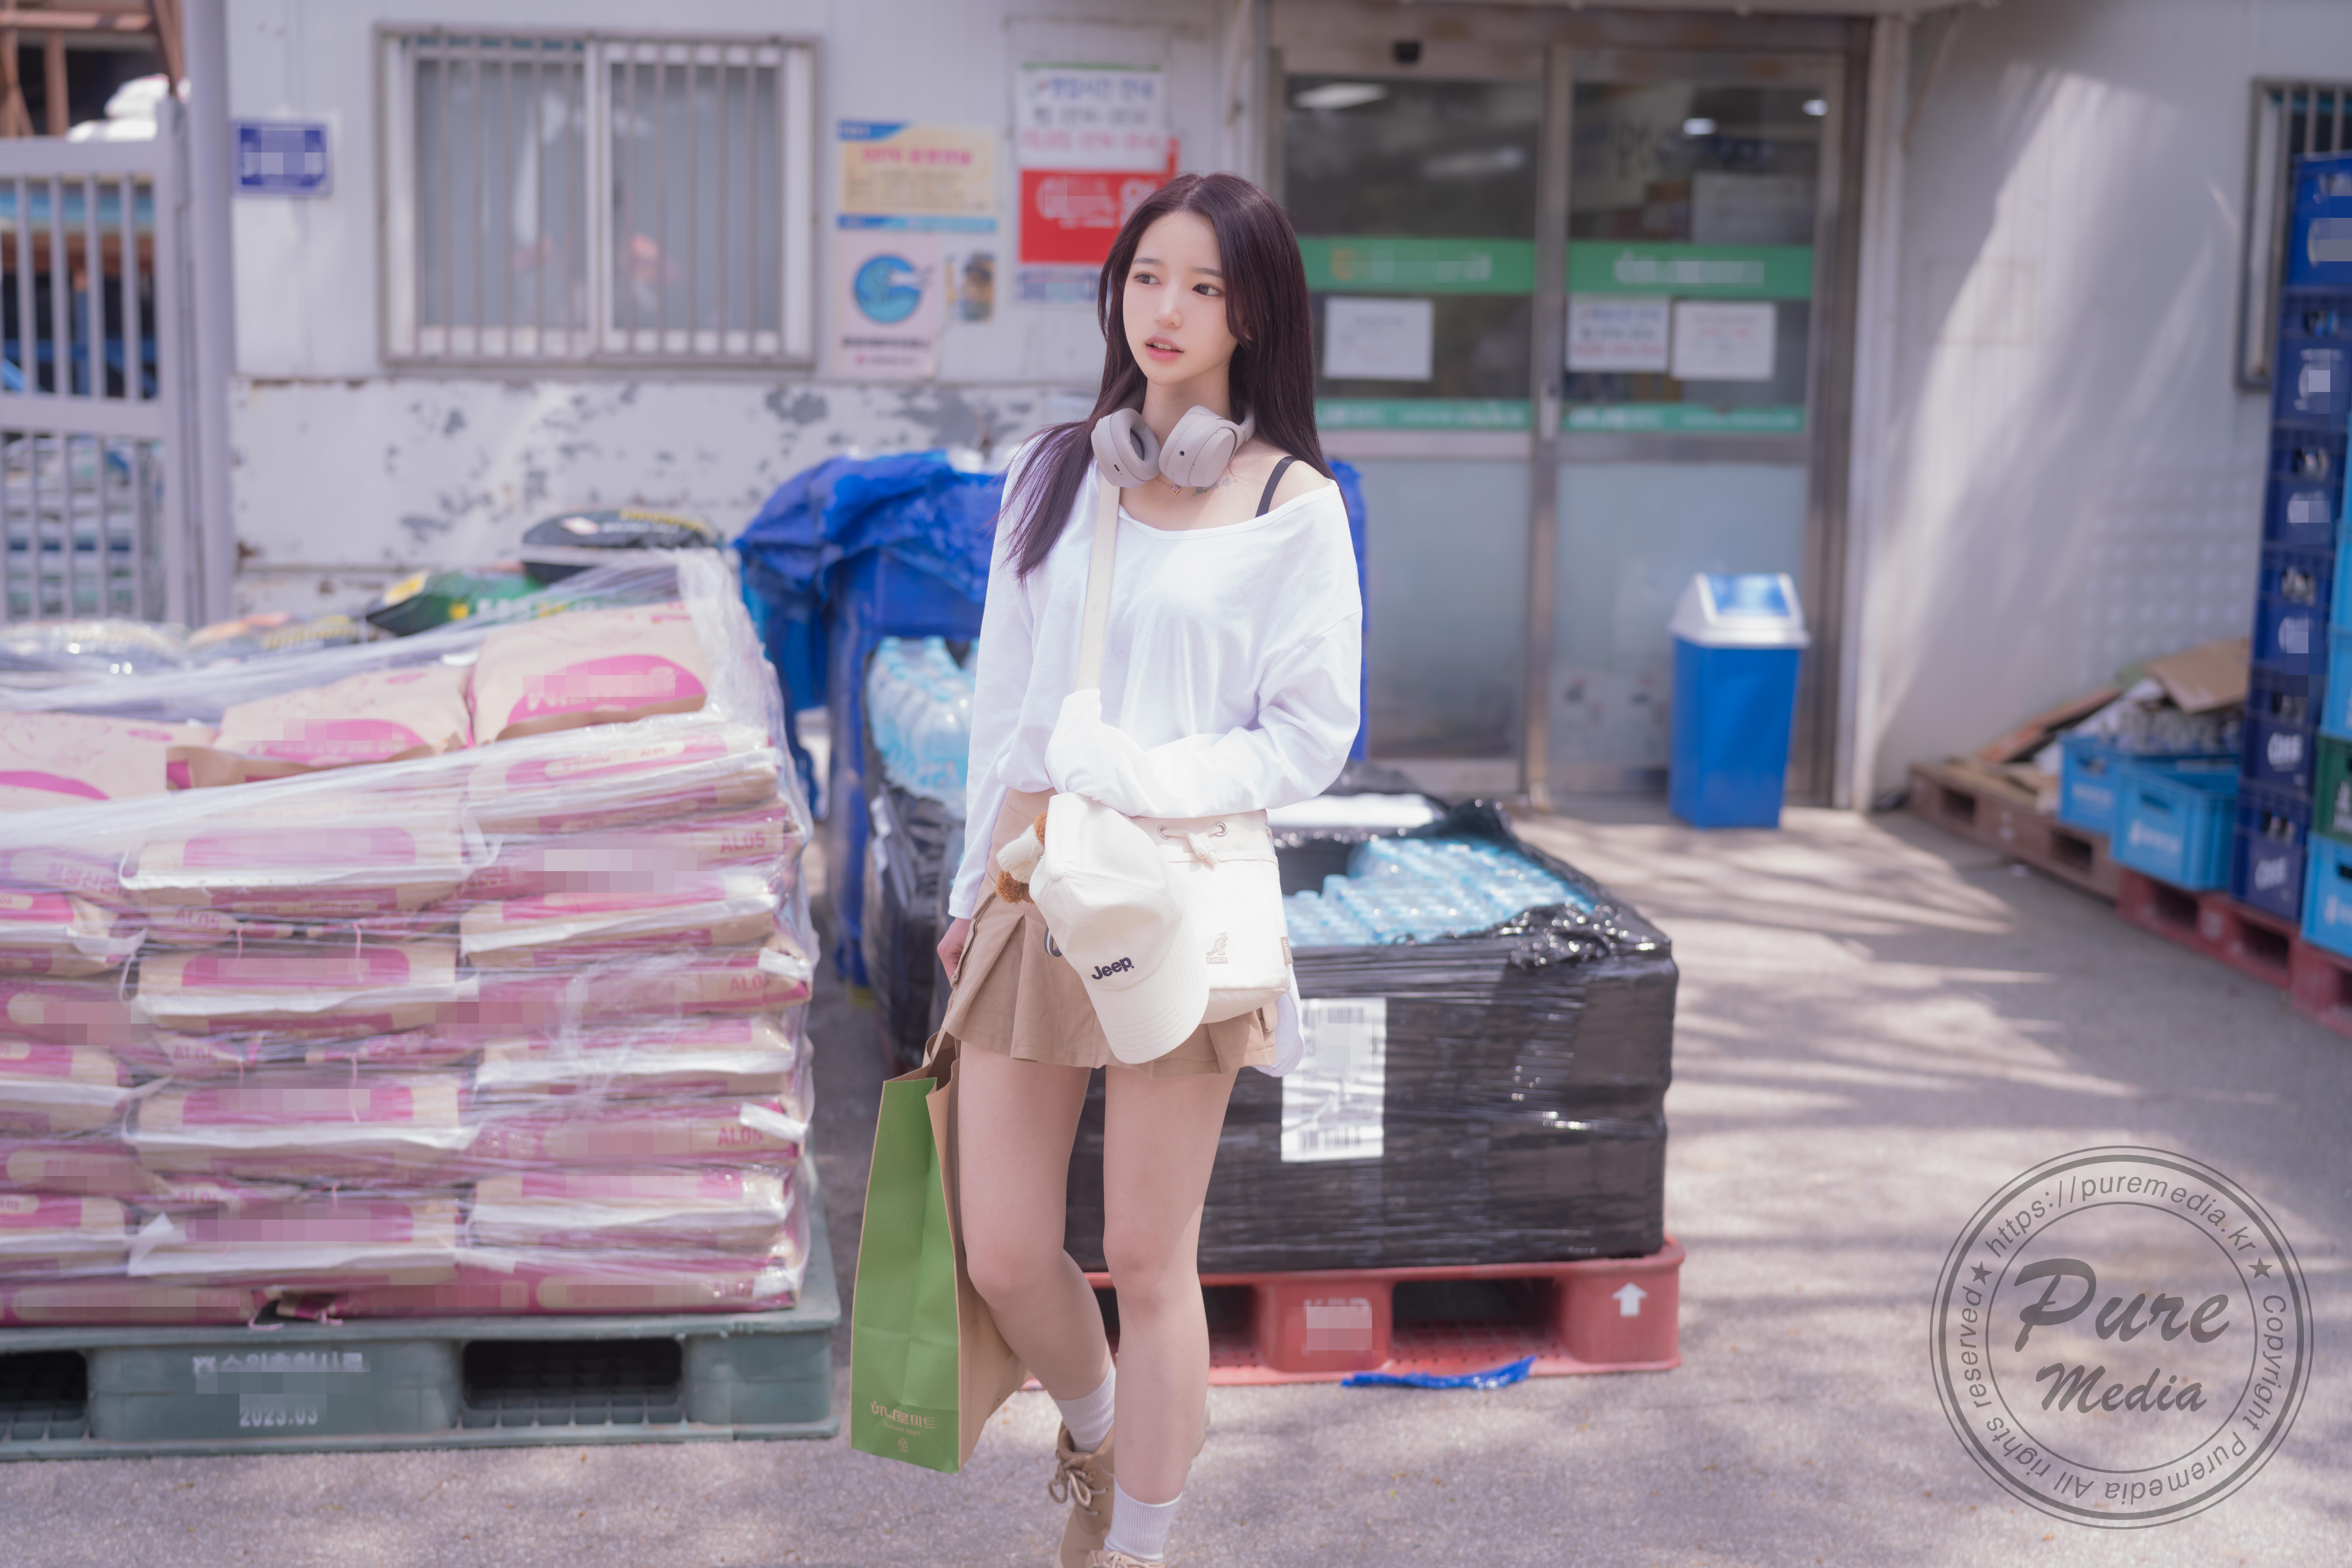 Asian Korean Women Long Hair Black Hair Bag White Blouse Baseball Cap Model 9504x6336